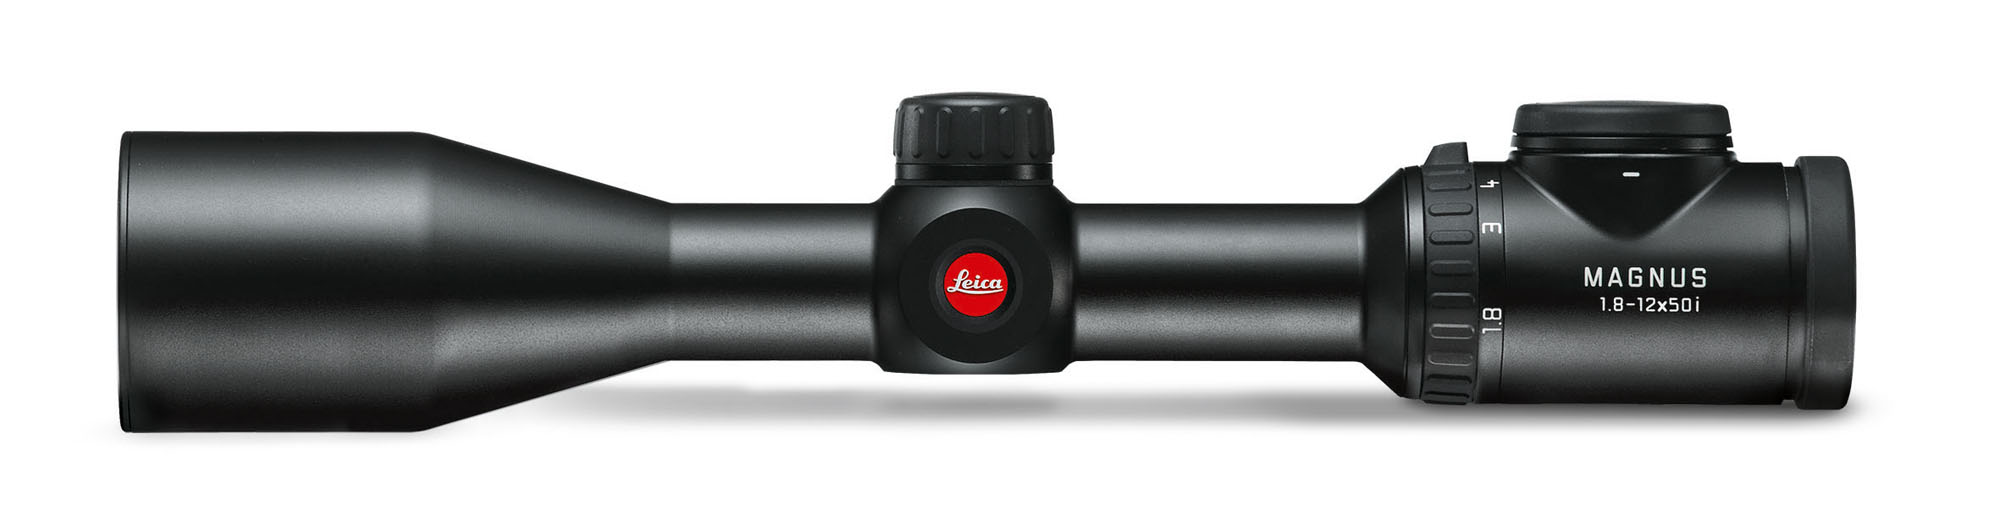 Zielfernrohr Leica Magnus 1,8-12x50i bietet ein Maximum an Flexibilität und Sicherheit